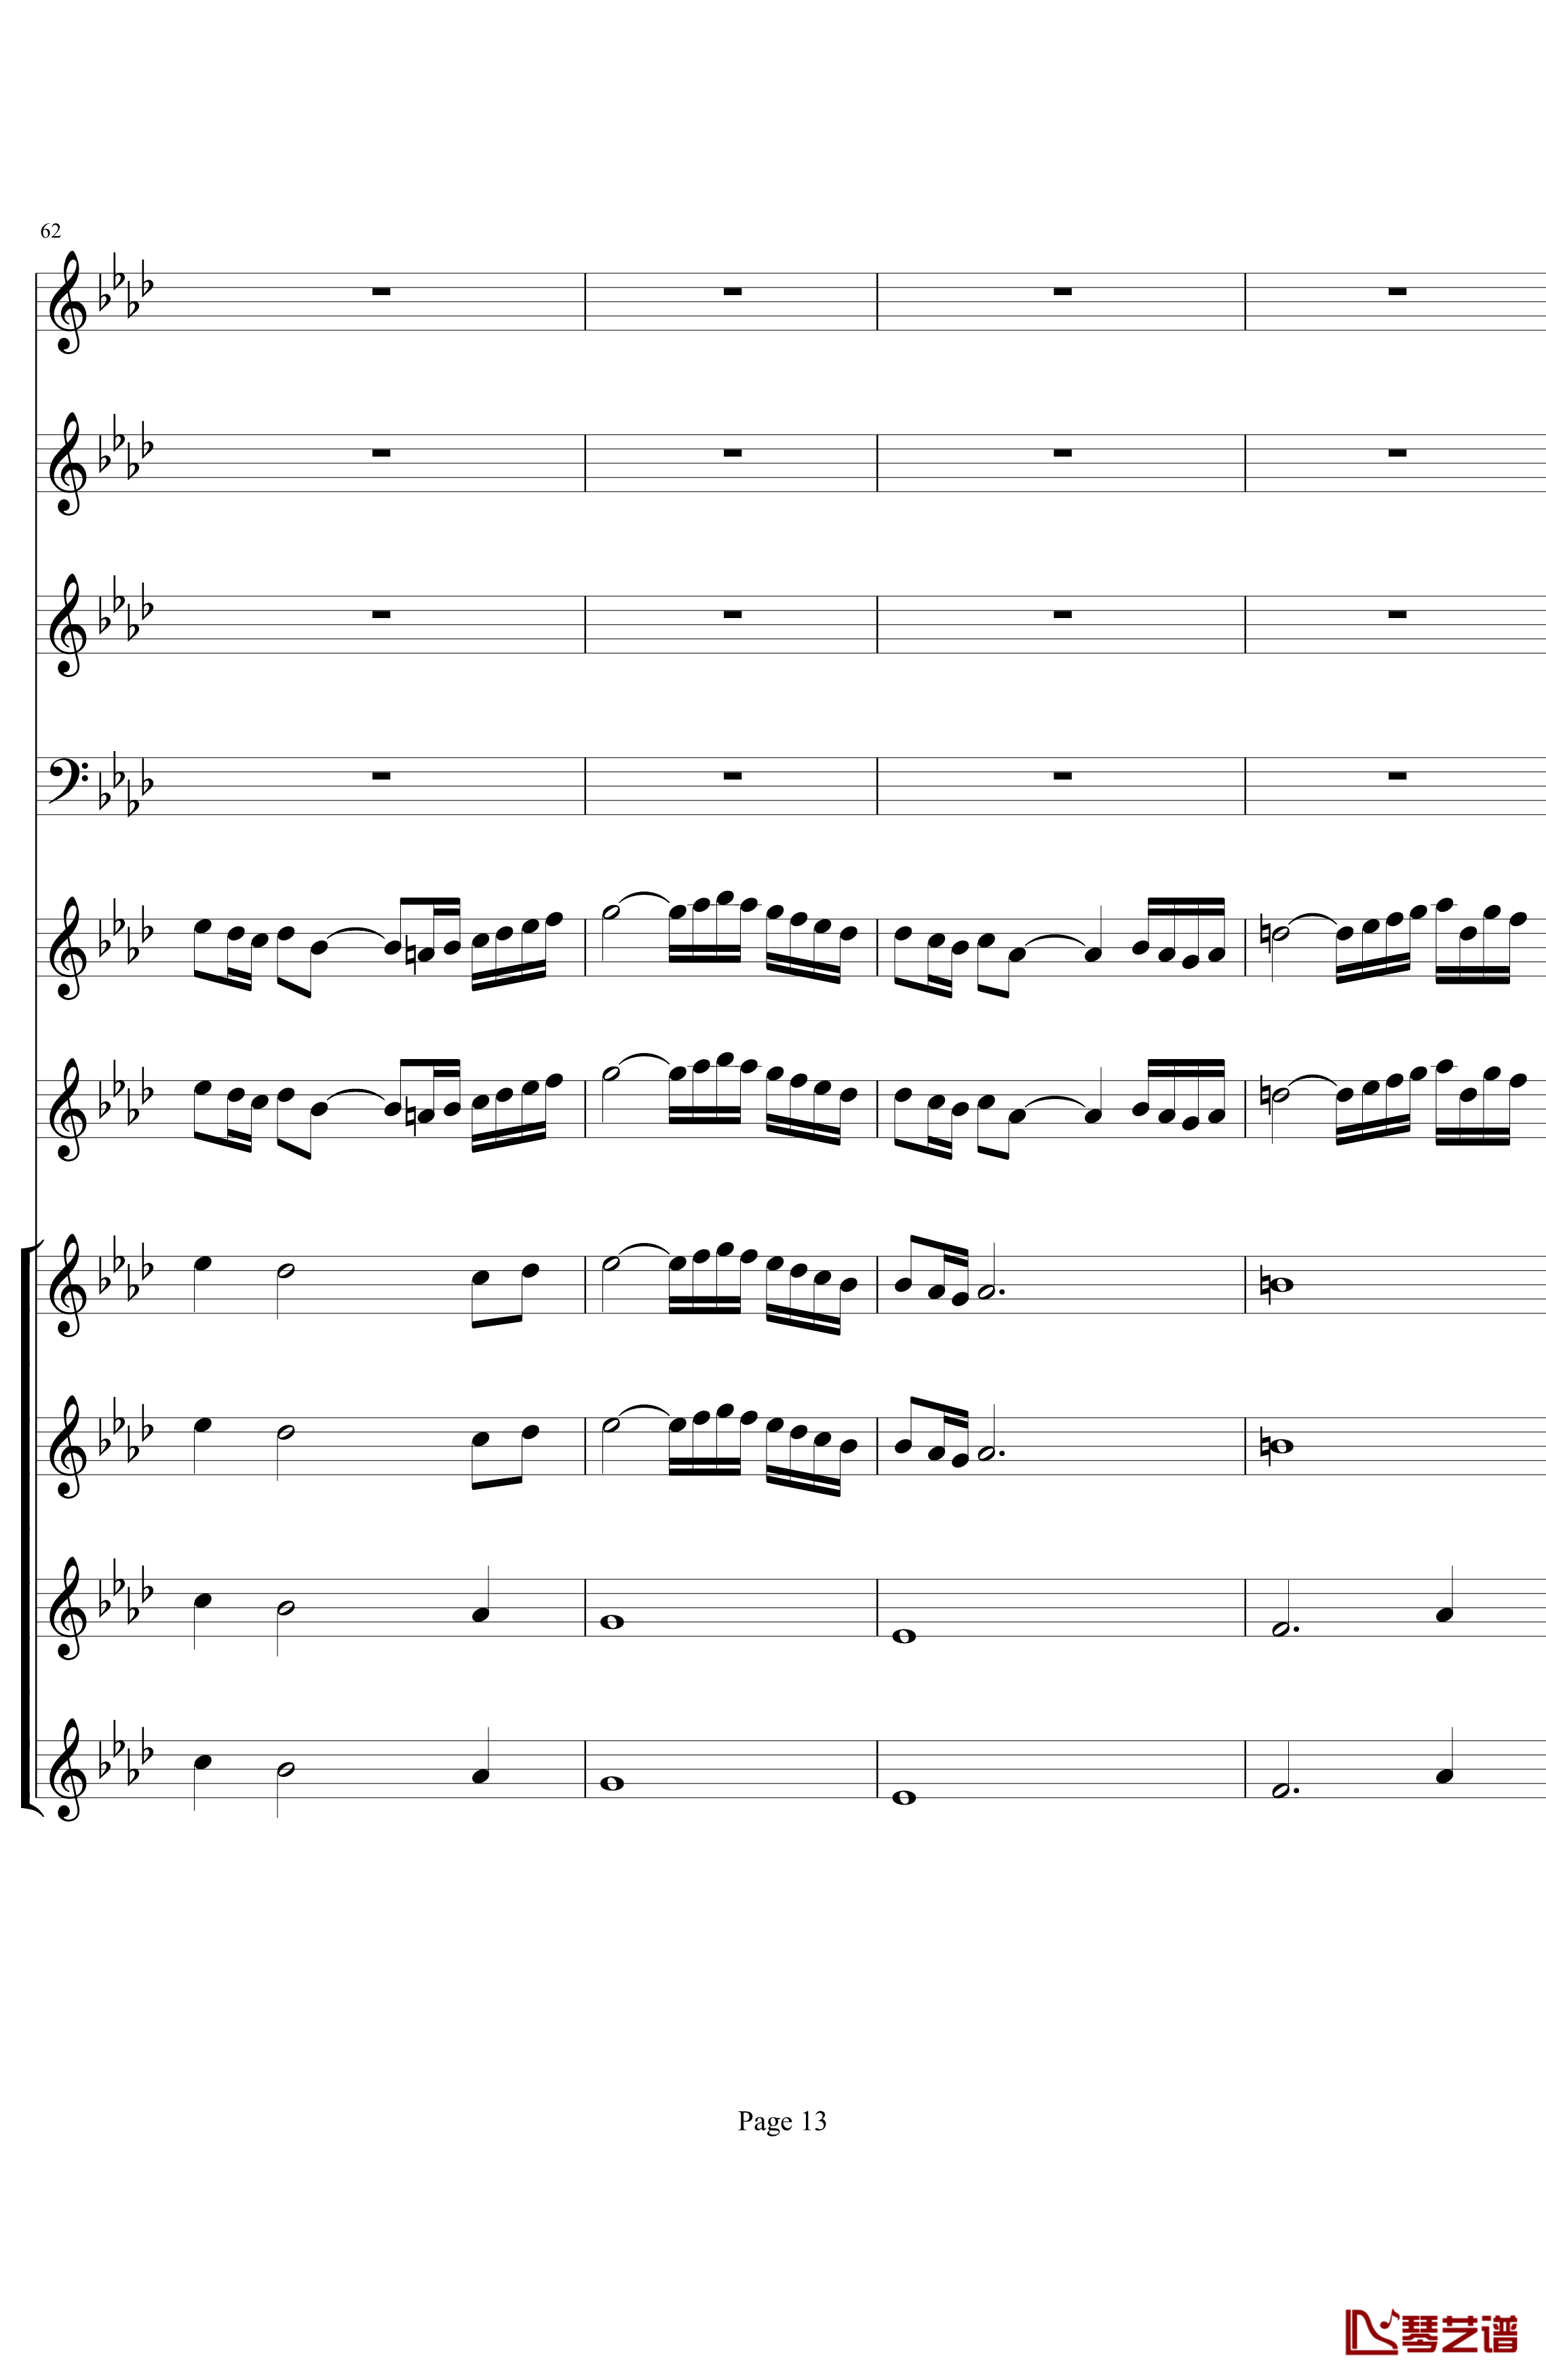 双童声协奏曲钢琴谱-Concerto Pour Deux Voix-合唱版-Saint-Preux13